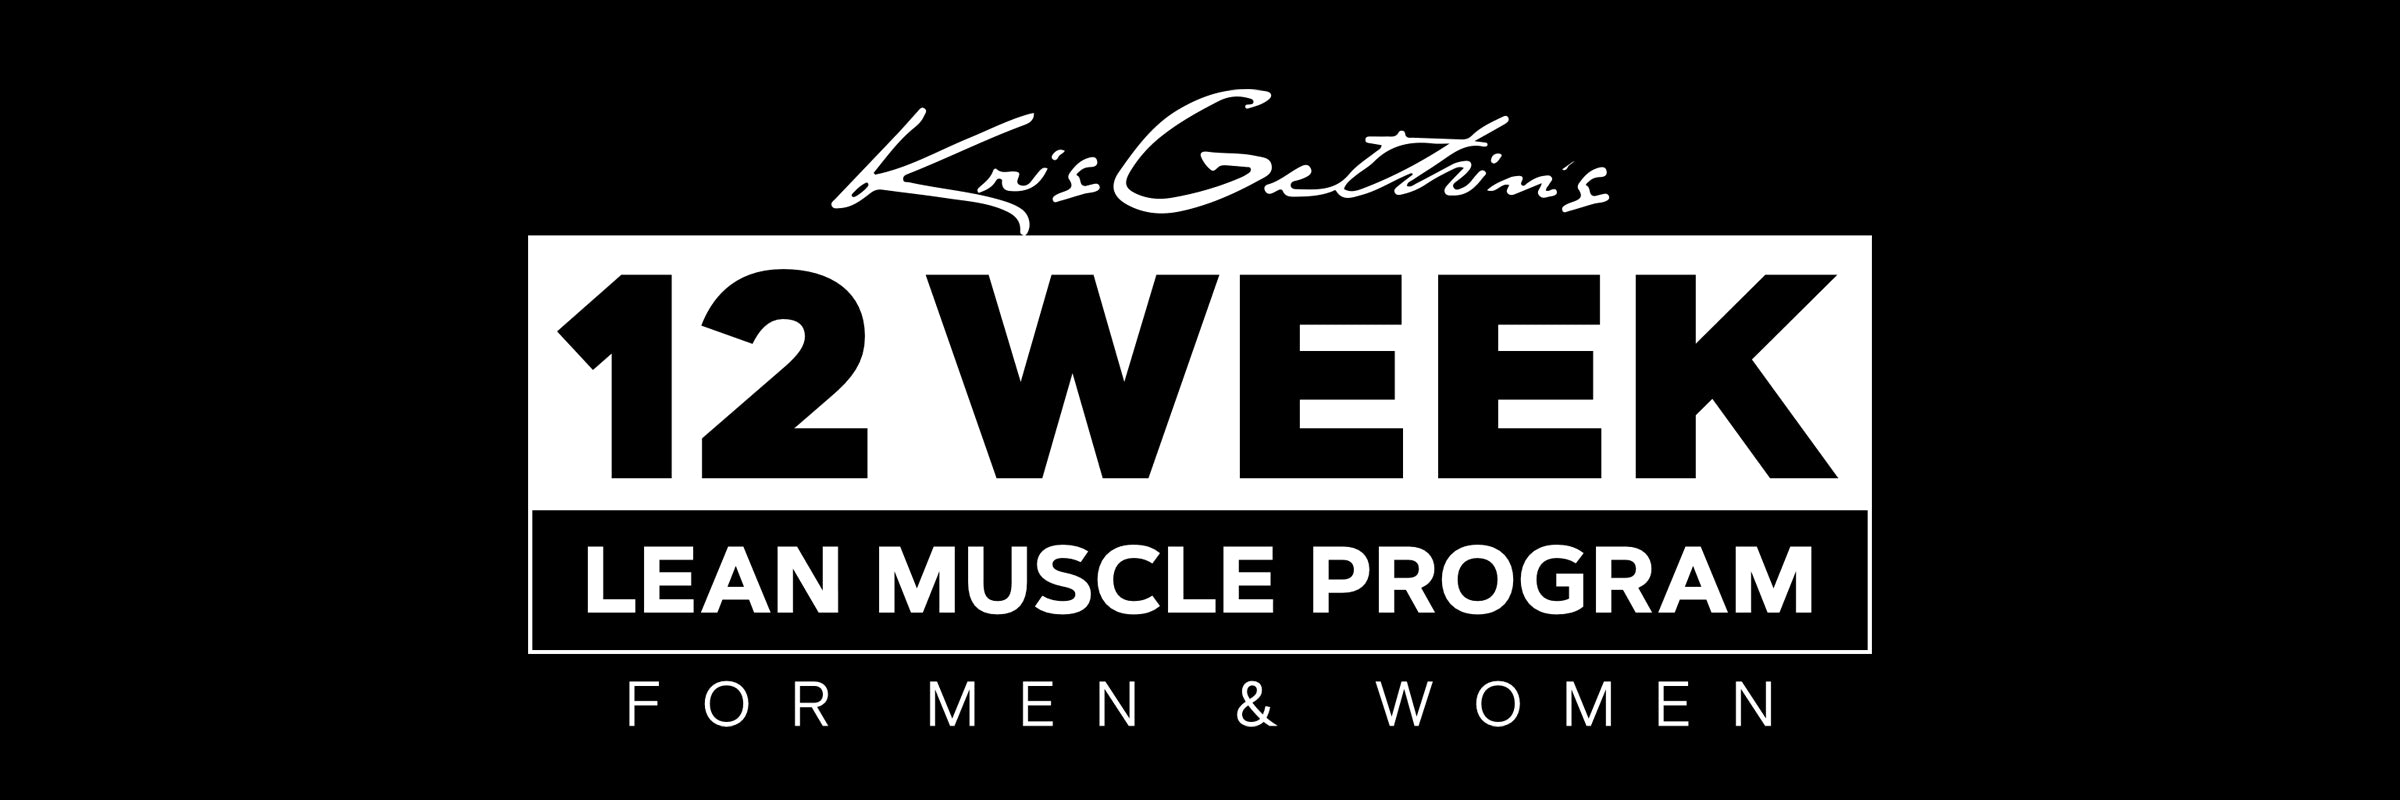 12 Week Lean Muscle Trainer